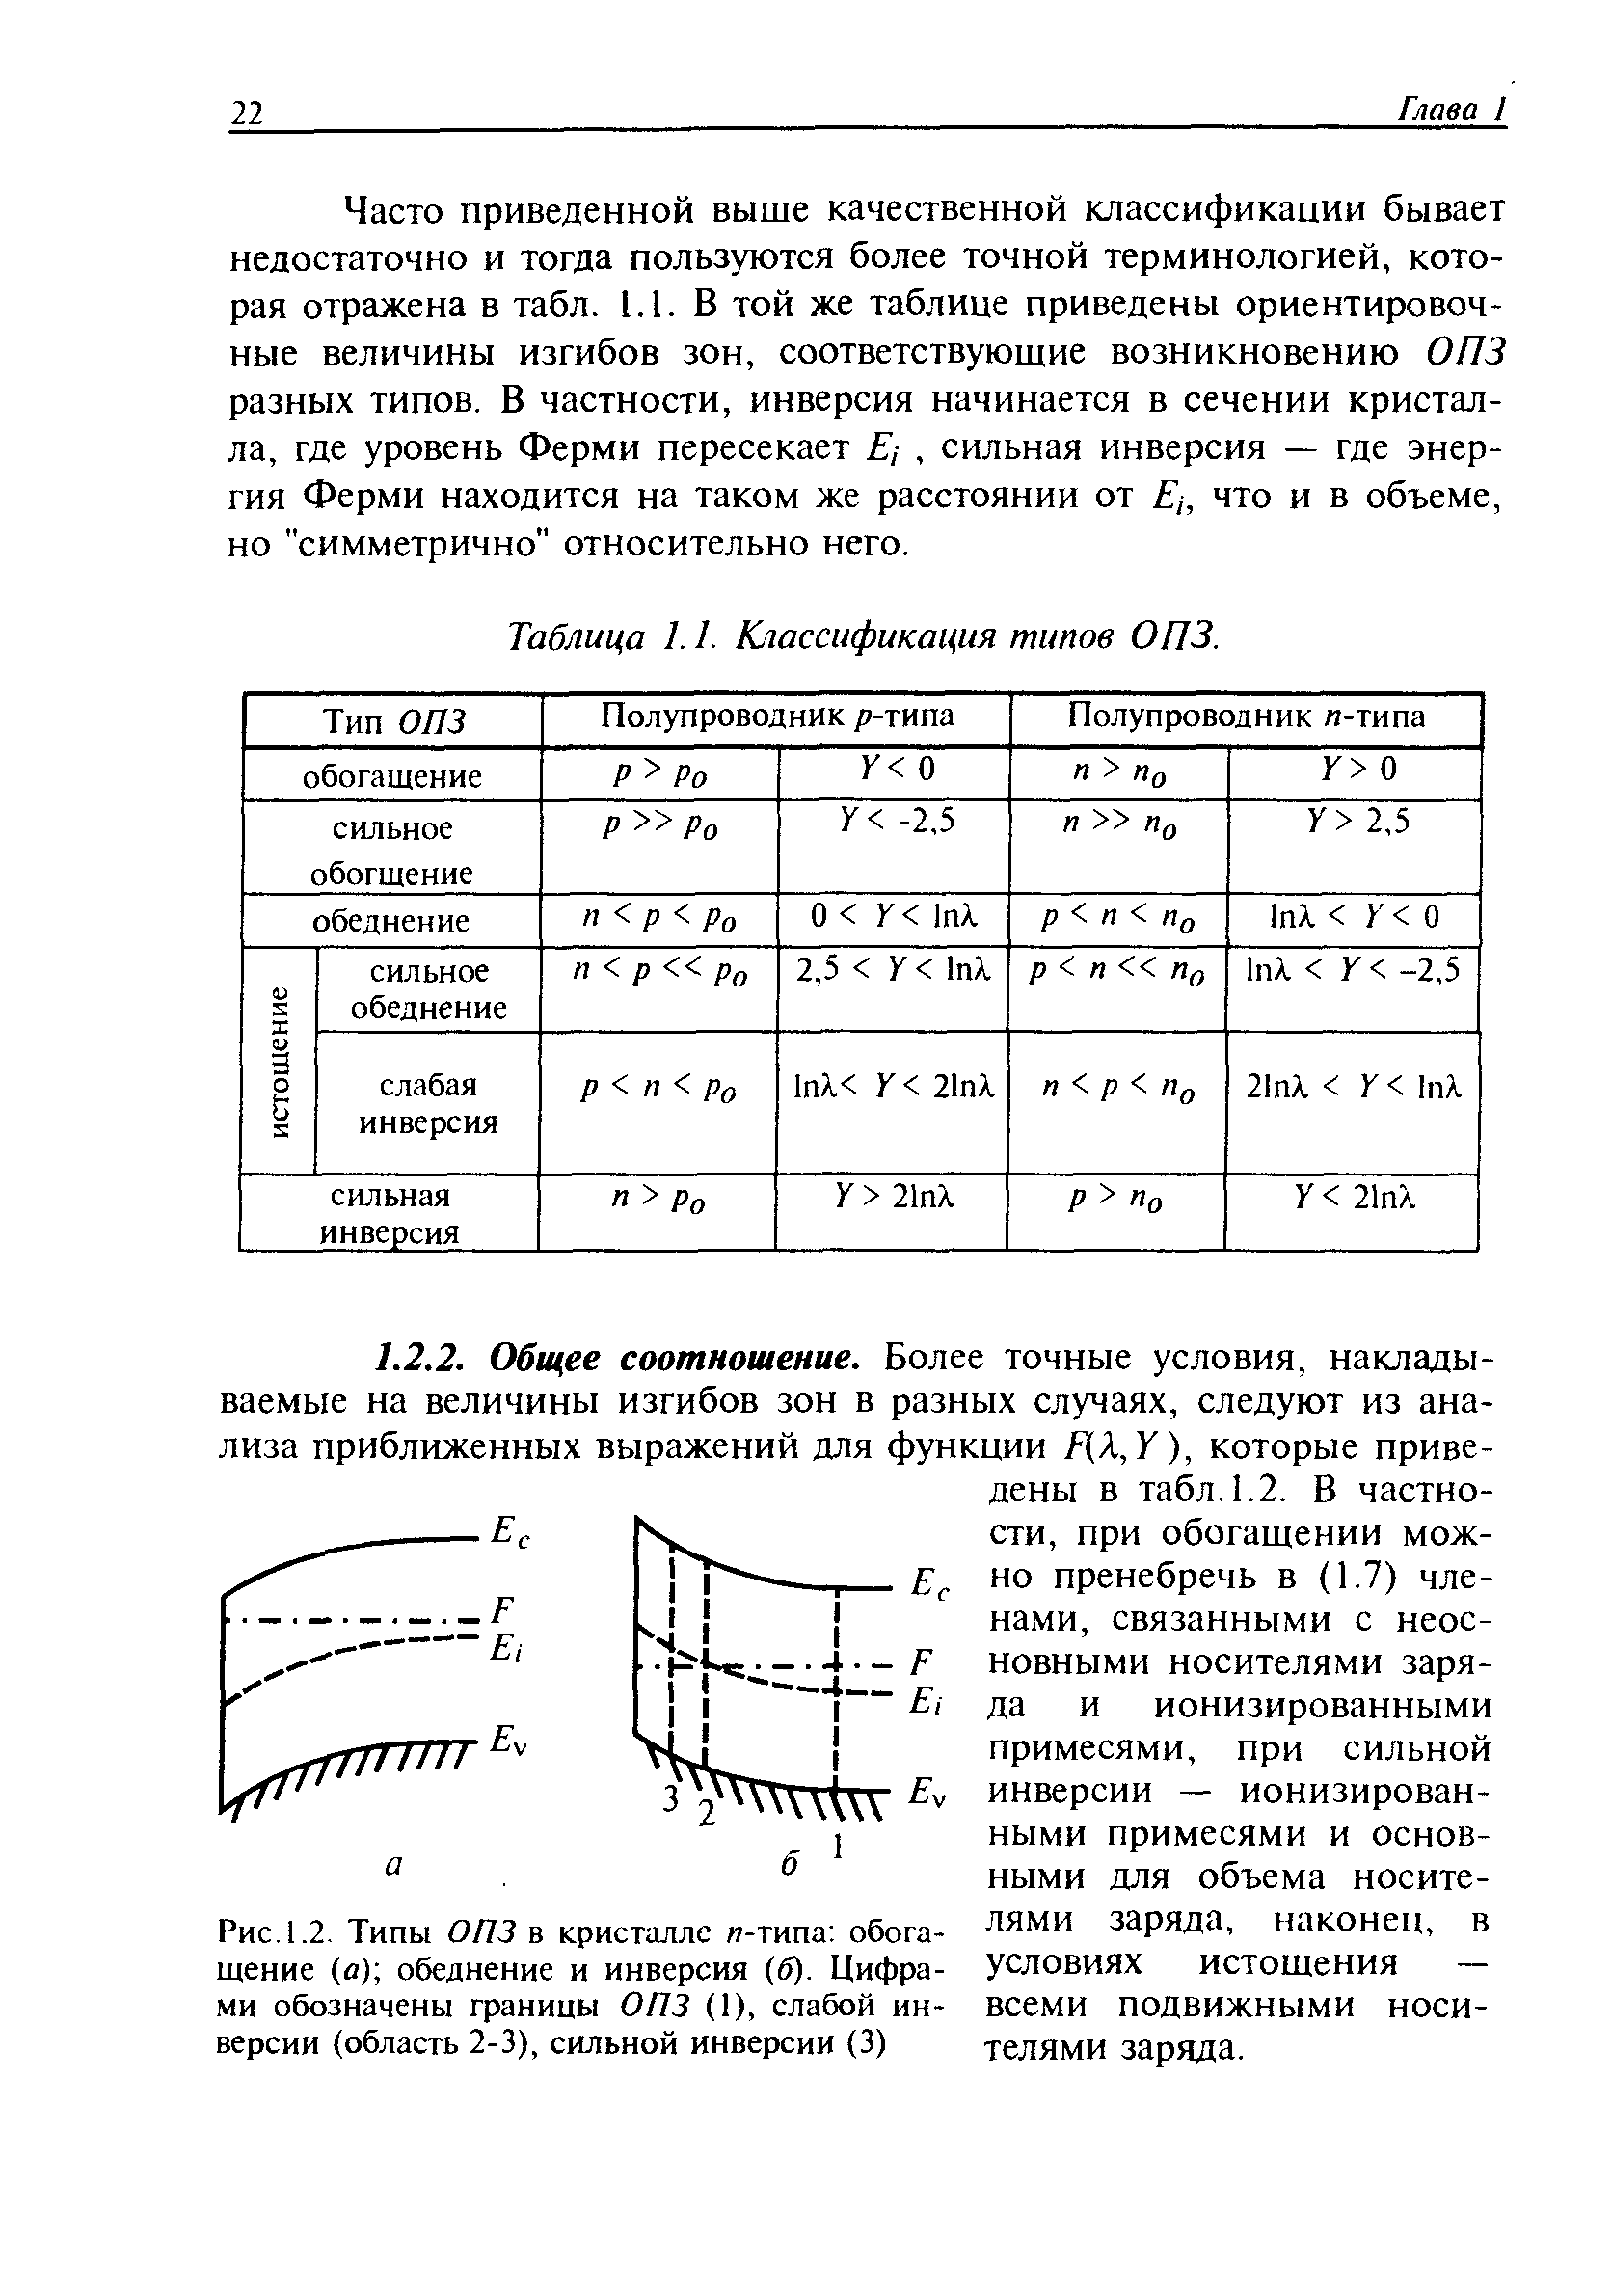 Рис. 1.2, Типы ОПЗ в кристалле п-типа обогащение (о) обеднение и инверсия (б). Цифрами обозначены границы ОПЗ (1), слабой инверсии (область 2-3), сильной инверсии (3)
